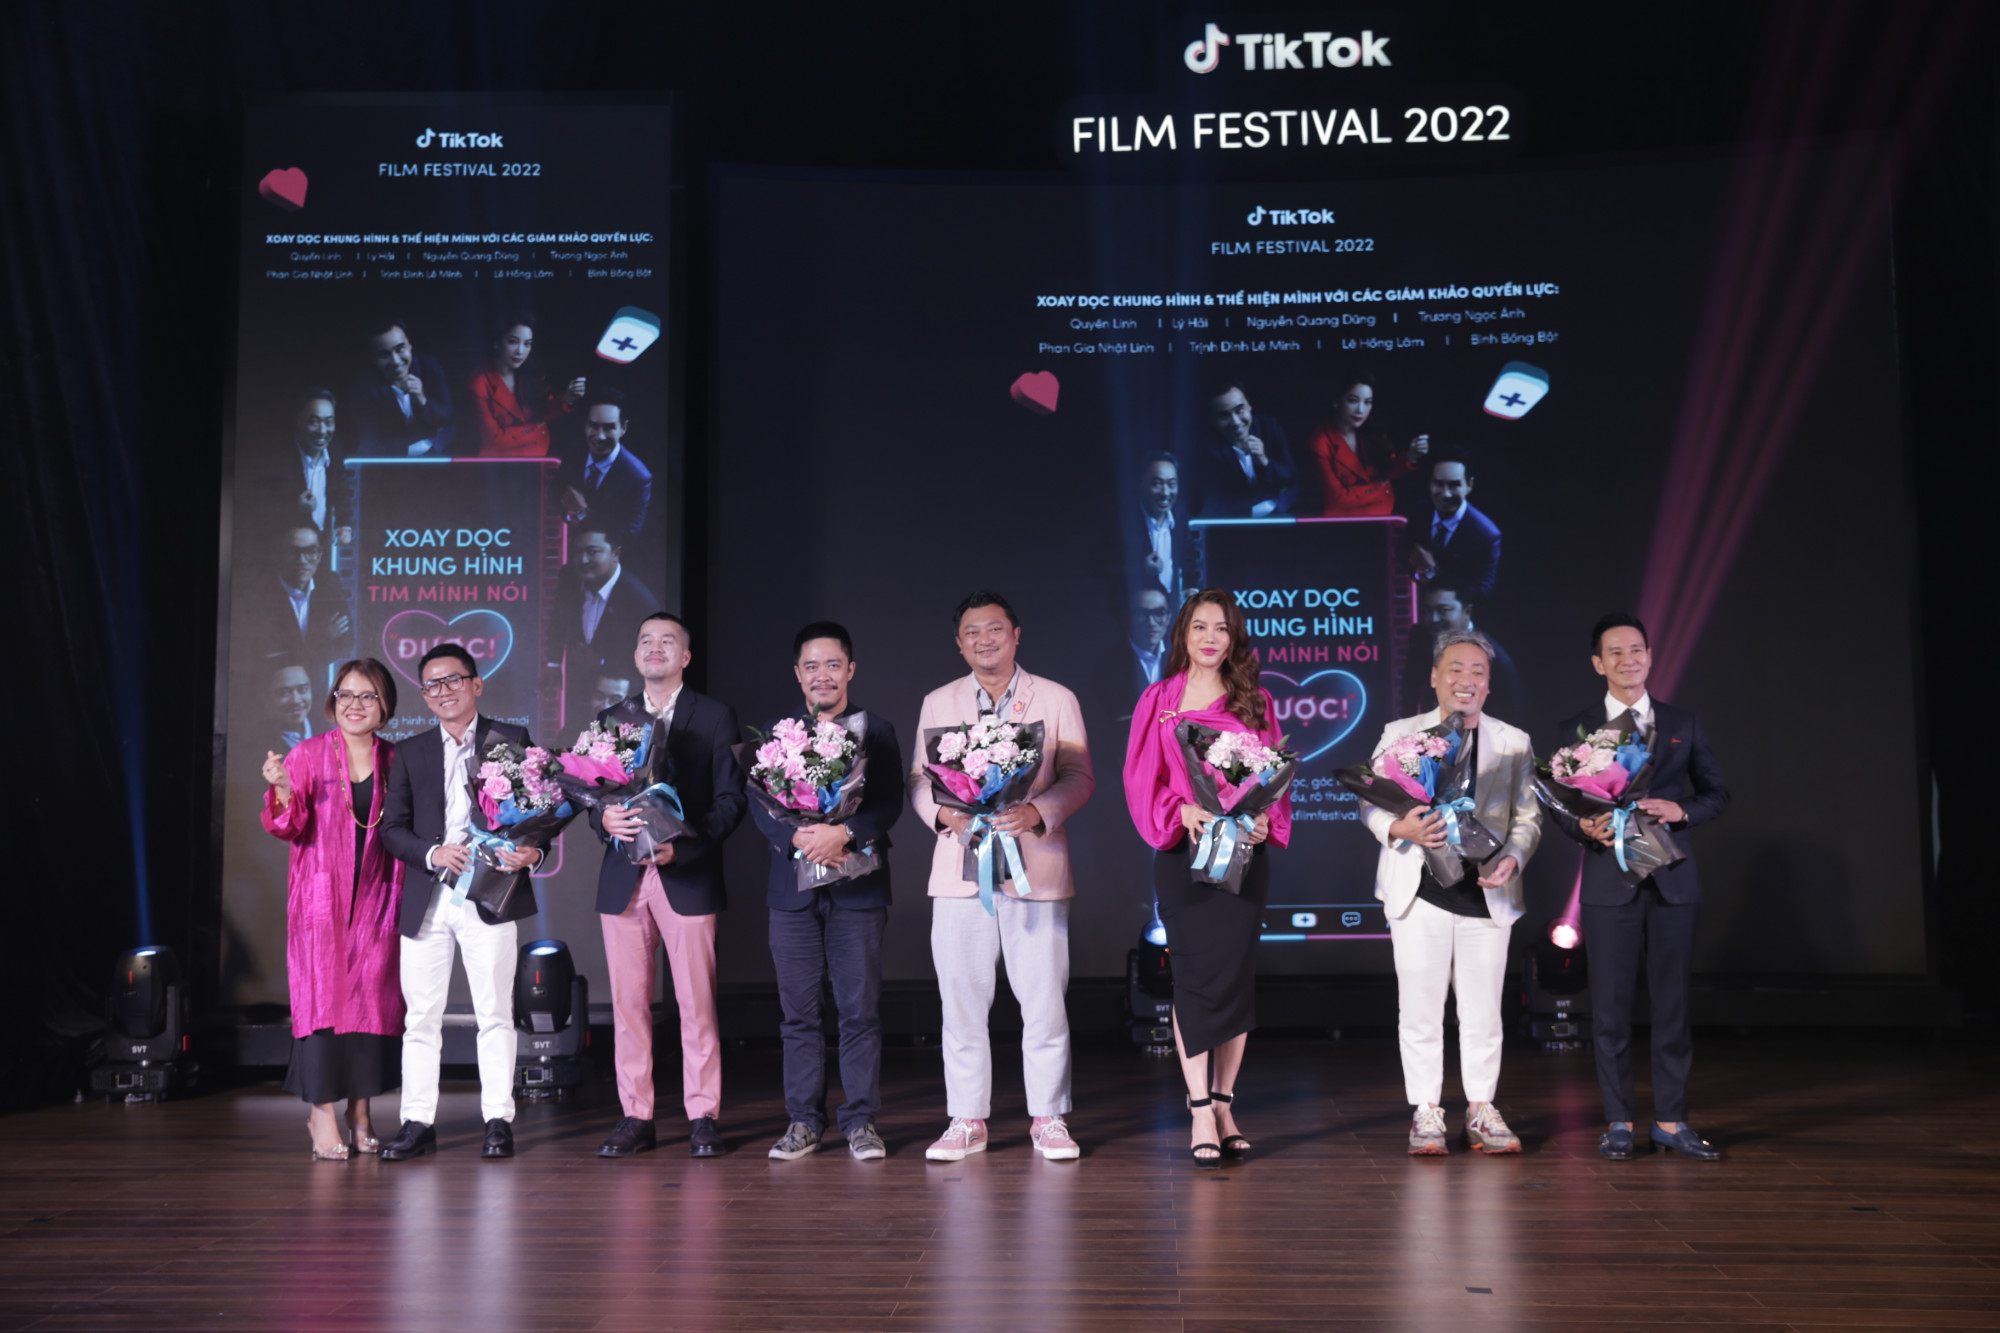 Ban giám khảo LHP Tik Tok là những gương mặt nổi tiếng trong làng phim Việt